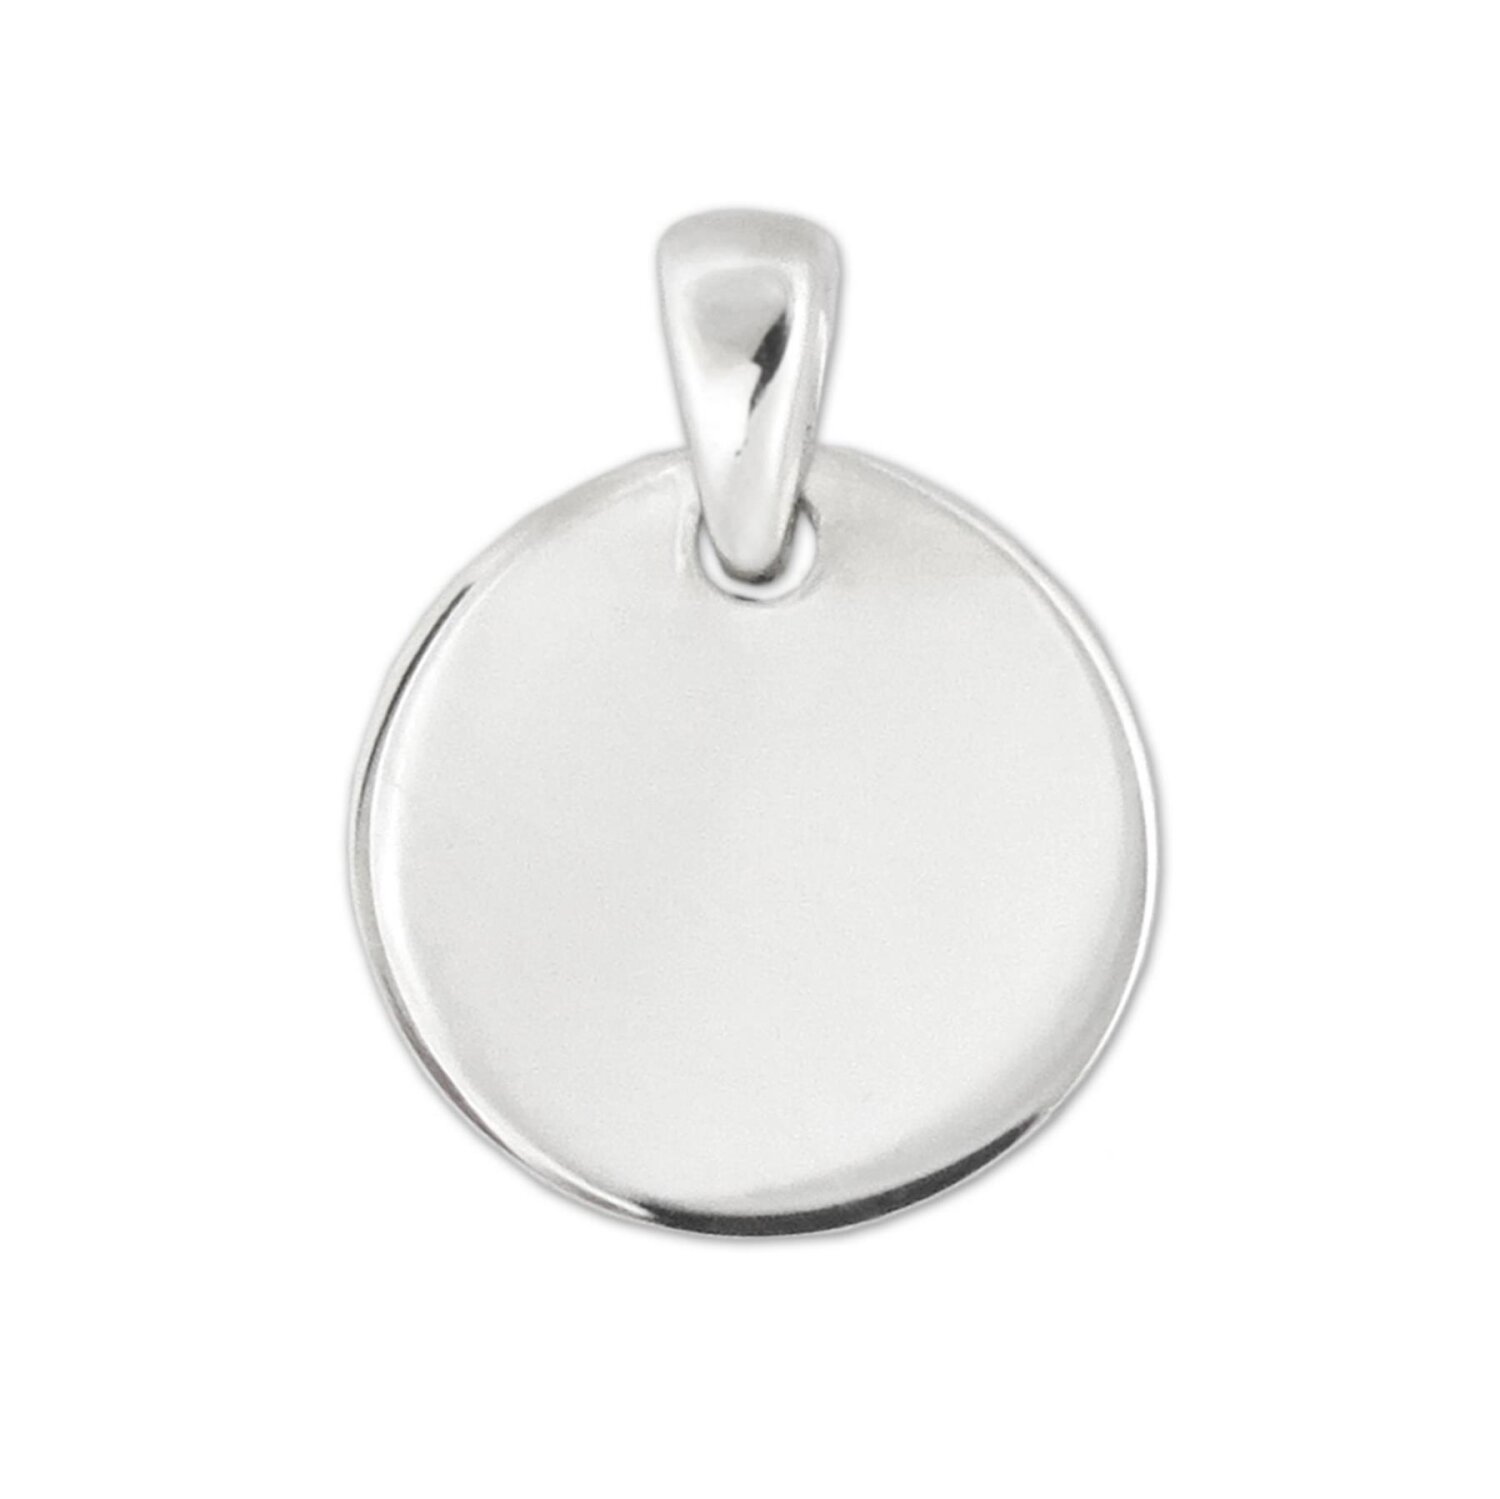 Silberne Gravurplatte rund Ø 12 mm beidseitig glänzend  Echt Silber 925 mit Gravur